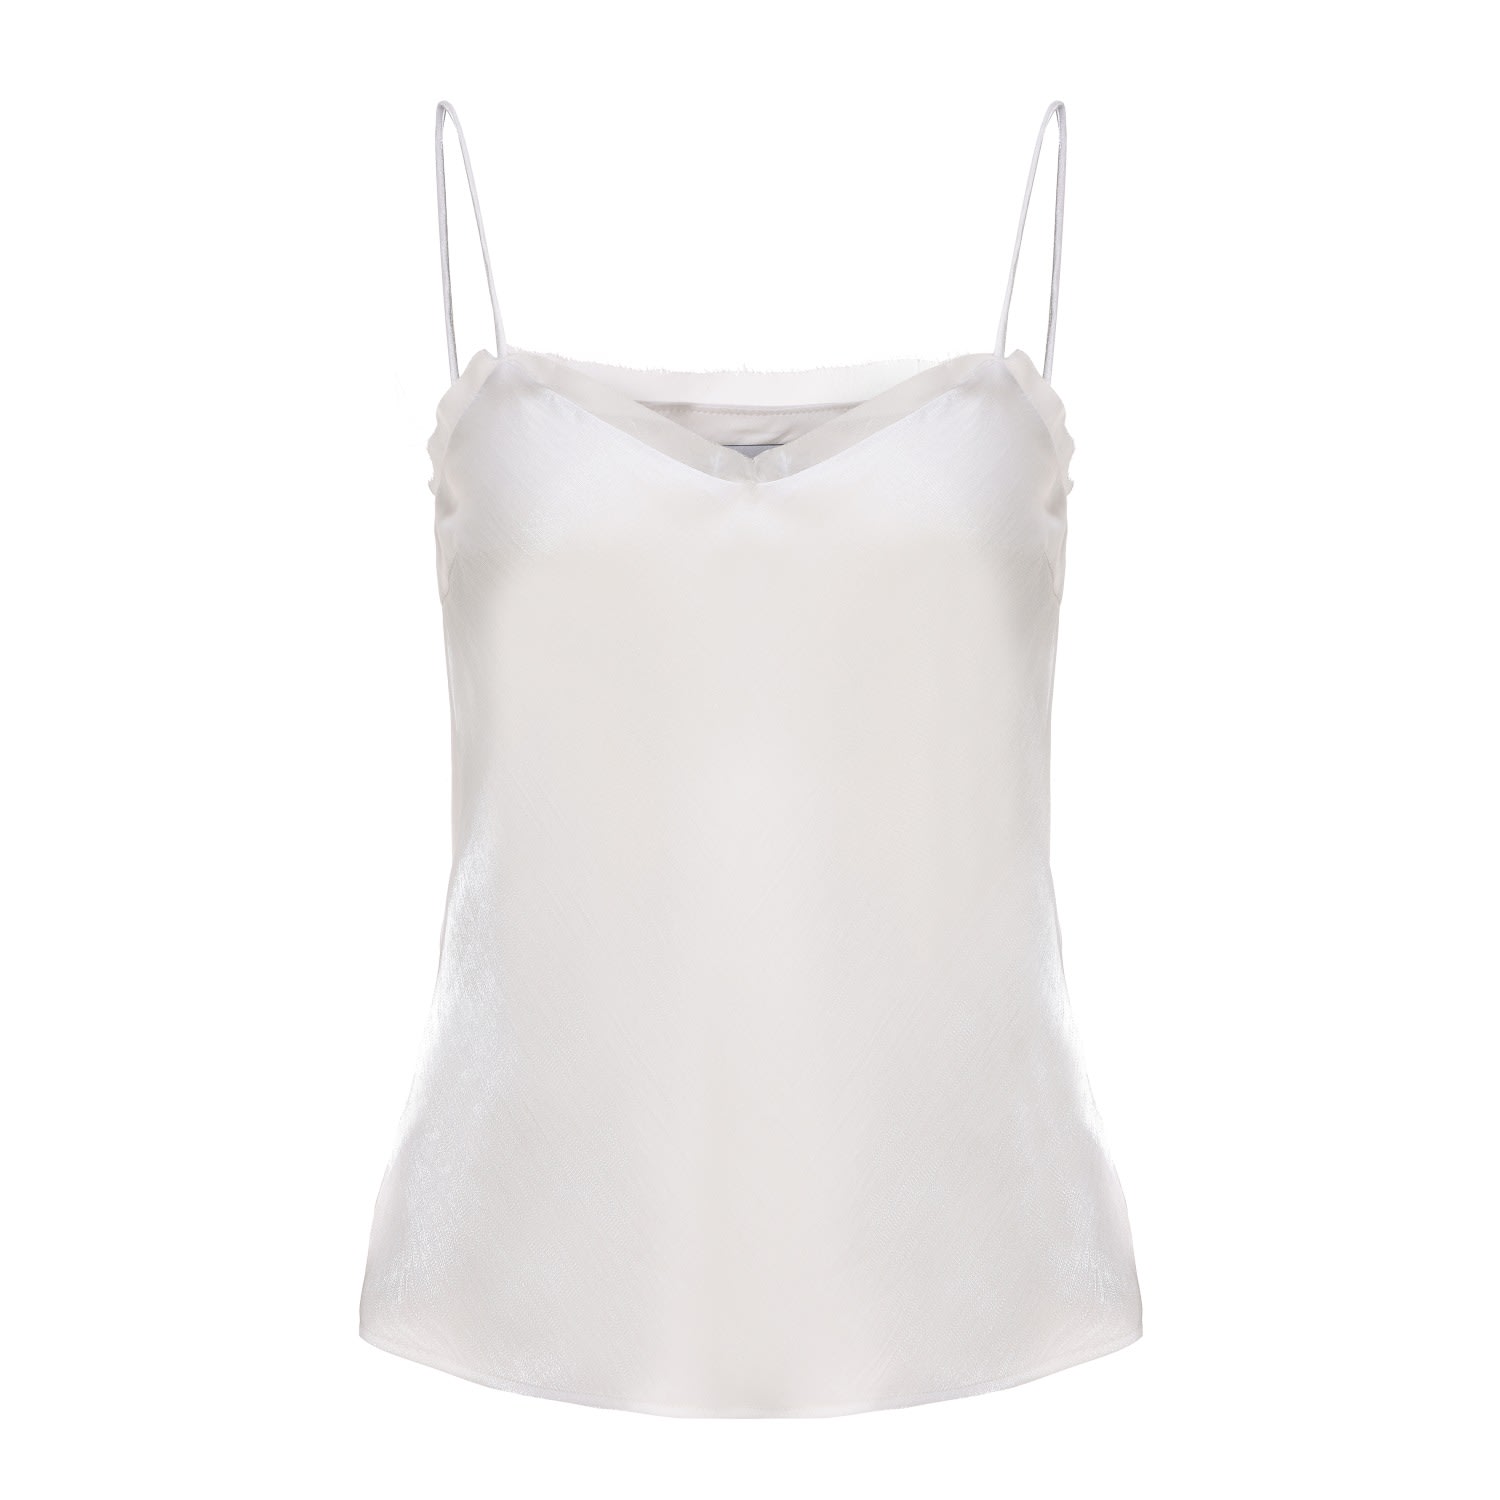 George Patrick Women's Neutrals Nadine Spaghetti Strap Camisole Top In White